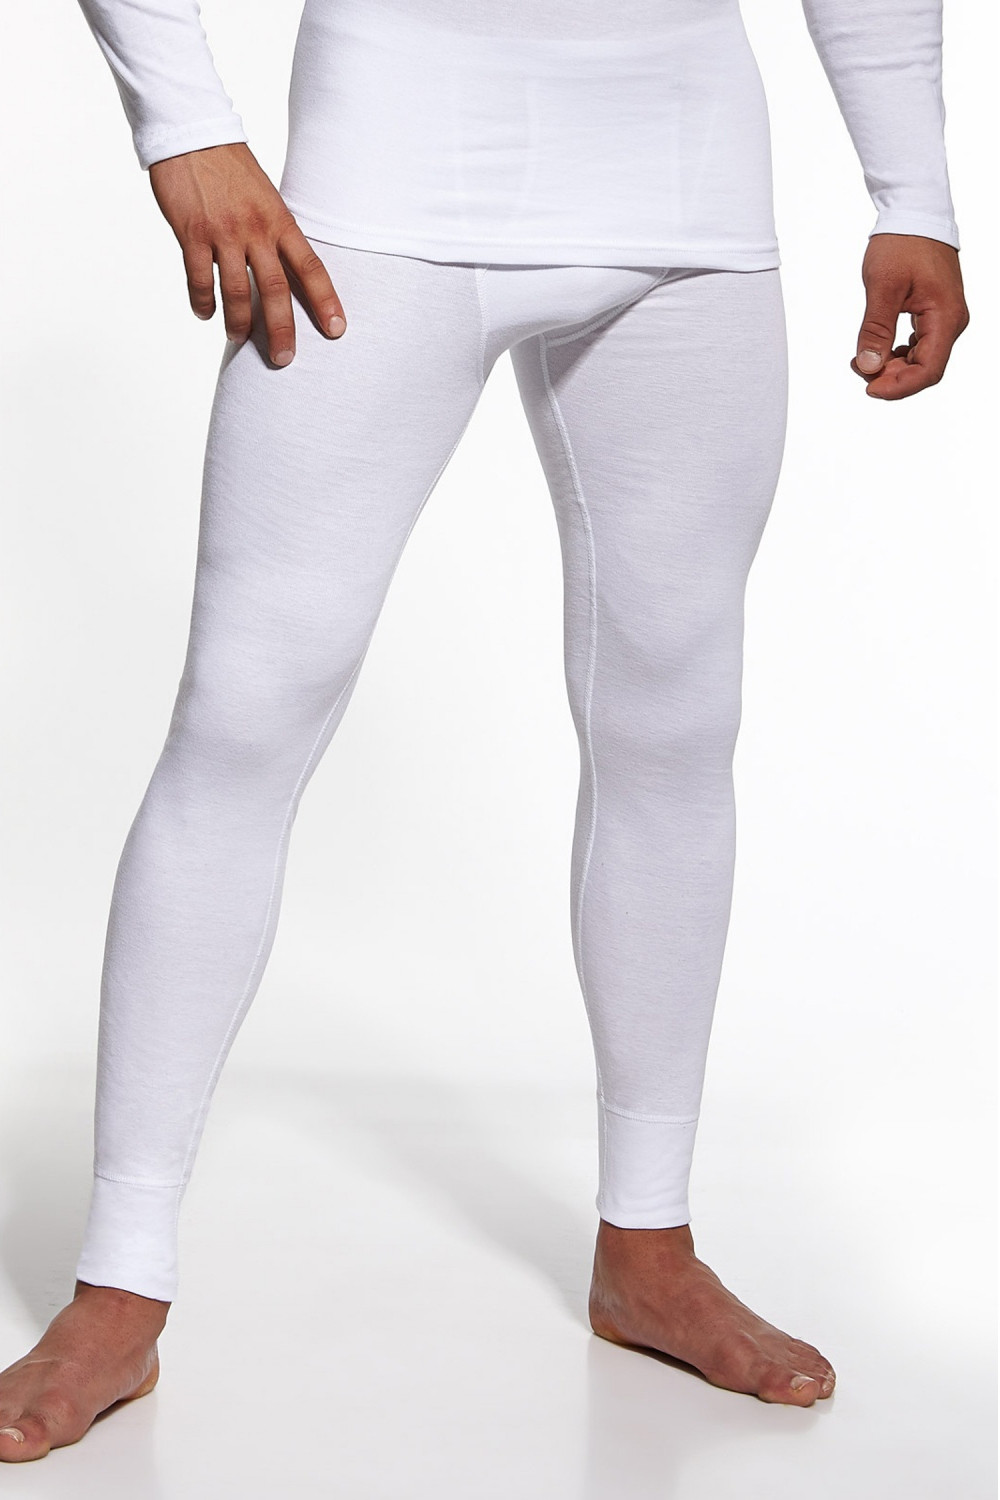 Pánské podvlékací kalhoty Authentic white - CORNETTE Bílá M